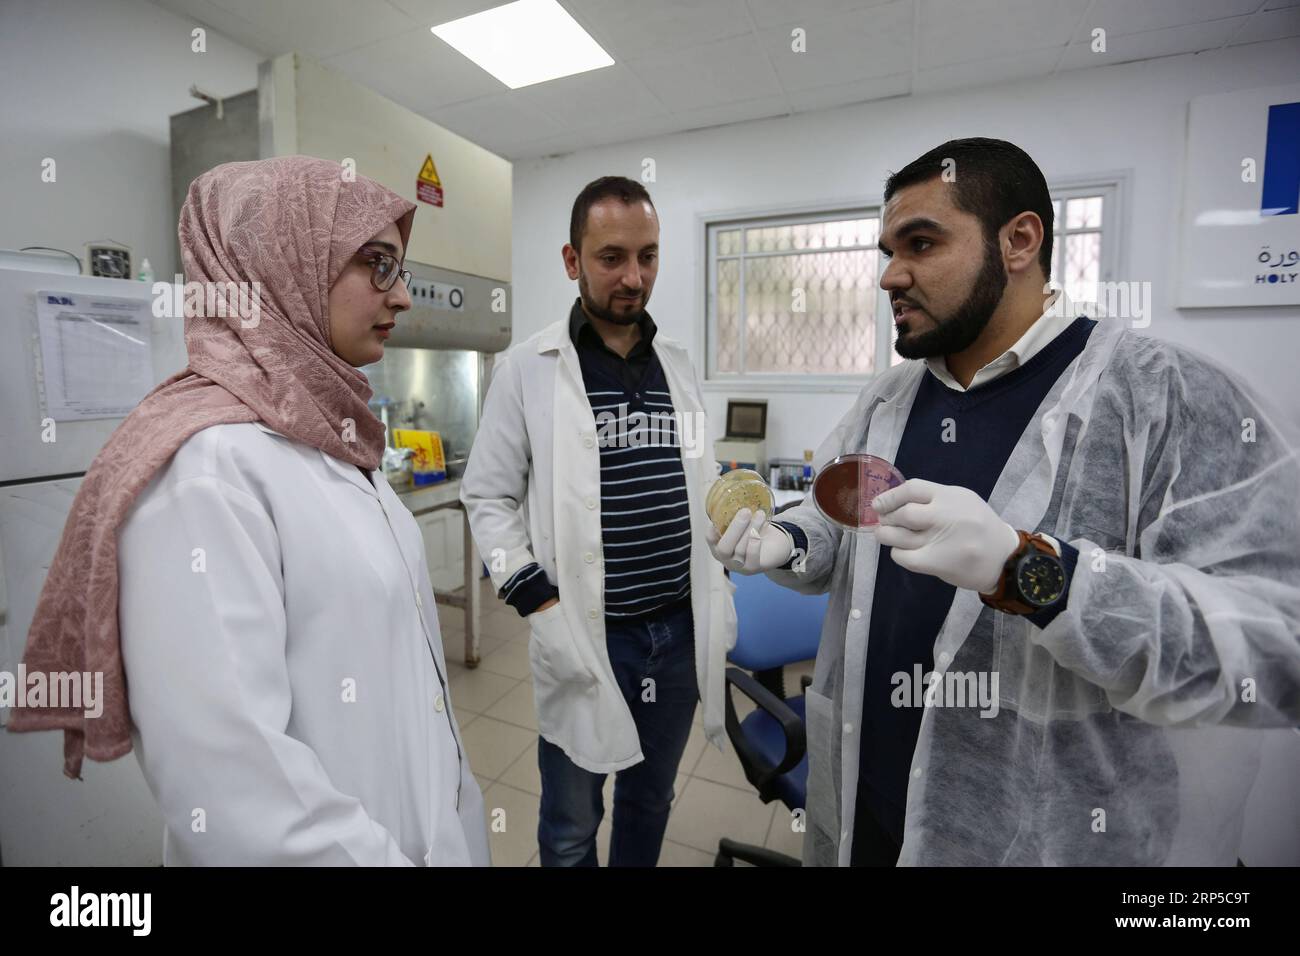 (181208) -- GAZA, 8. Dezember 2018 -- palästinensische junge Wissenschaftler Salah al-Sadi (C), 36, Mahmoud al-Hindi (R), 29 und Reem Jabor (L), 22, arbeiten am 5. Dezember 2018 in einem Labor in Gaza-Stadt. Ein Team junger palästinensischer Wissenschaftler aus dem Gazastreifen versucht, Antibiotika und Pilze durch Nanotechnologie zu entwickeln. Das Team, das aus drei jungen Menschen besteht, hat kürzlich den ersten Platz im Wettbewerb der Innovation im Gesundheitssektor auf der Ebene der Universitäten im Gazastreifen gewonnen. ZU Spotlight: Gaza Junge Wissenschaftler versuchen, natürliche Antibiotika durch Nanotechnologie zu entwickeln. Stringer) (hdt) Stockfoto